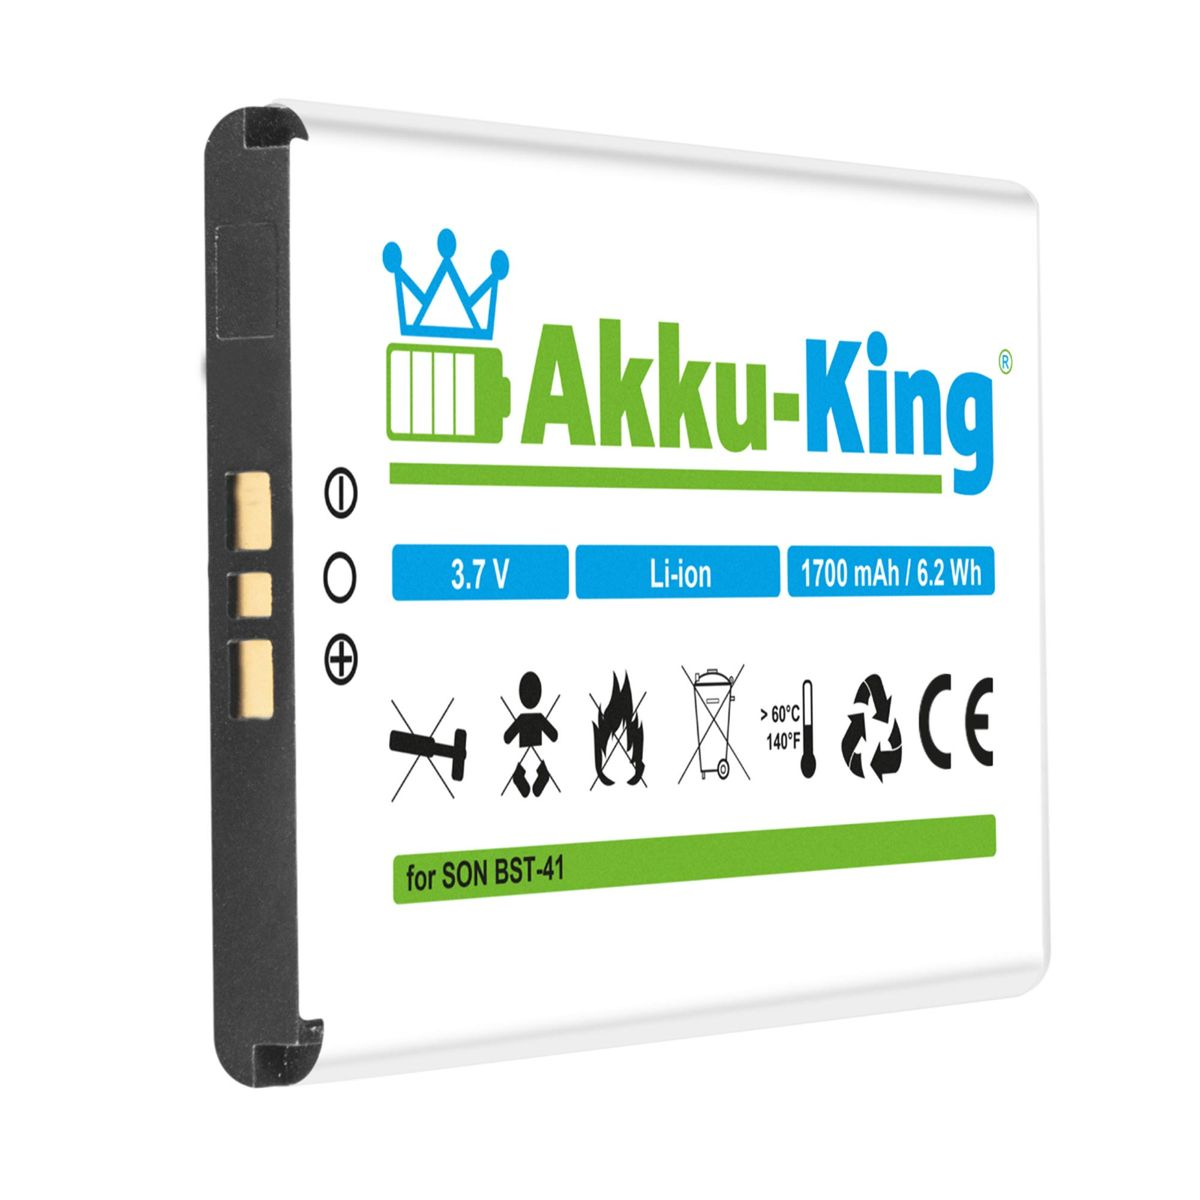 AKKU-KING 3.7 Li-Ion Volt, mit Handy-Akku, 1700mAh Sony-Ericsson kompatibel Akku BST-41